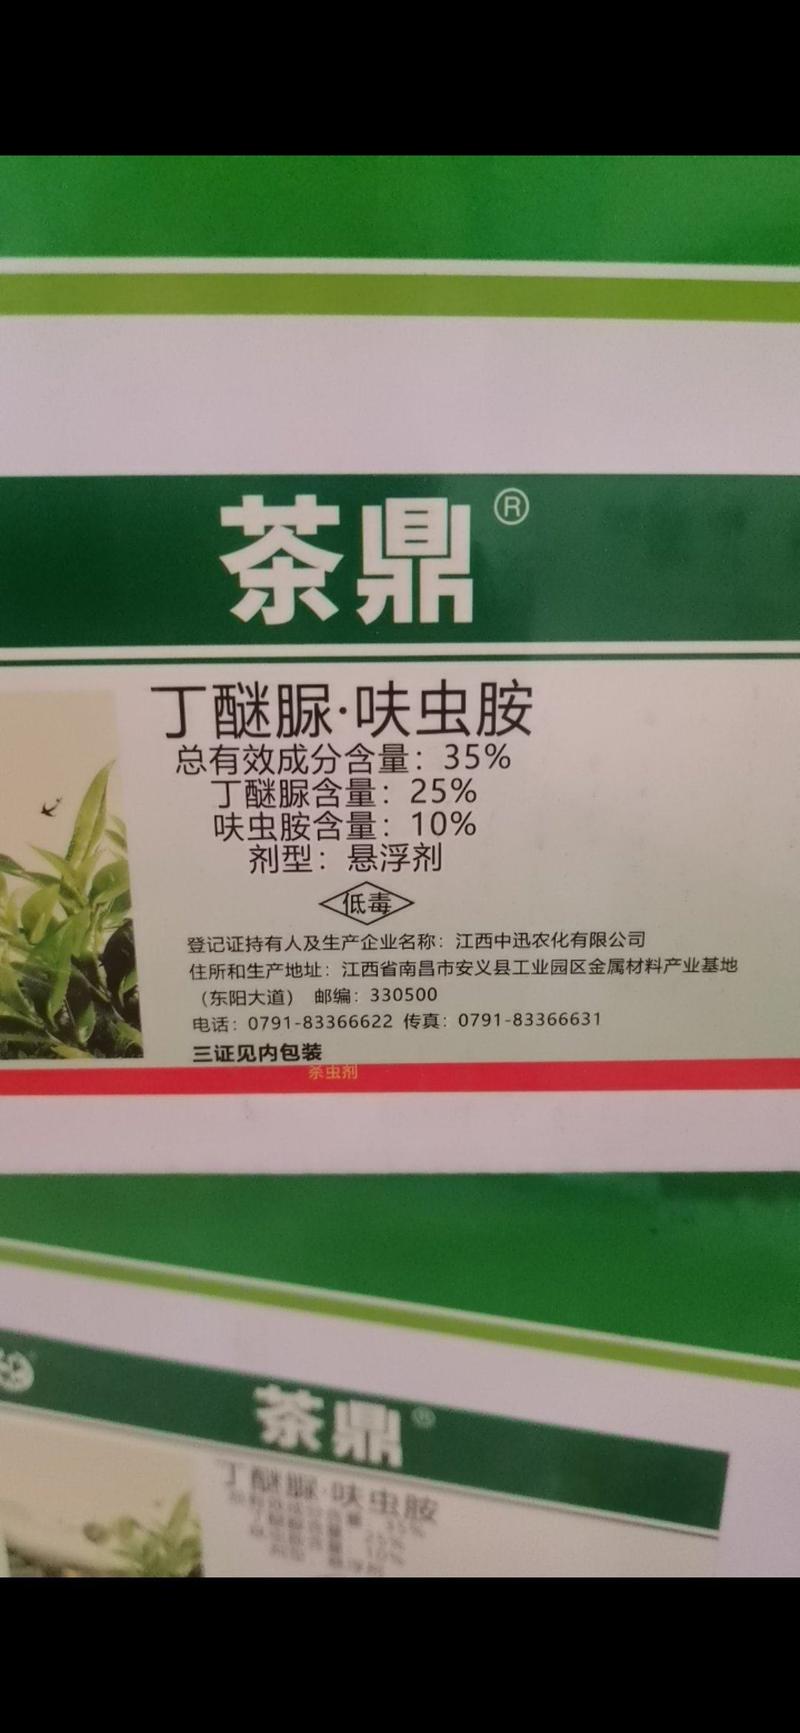 中迅茶鼎丁醚脲呋虫胺茶小绿叶蝉黑刺粉虱茶叶专用杀虫剂